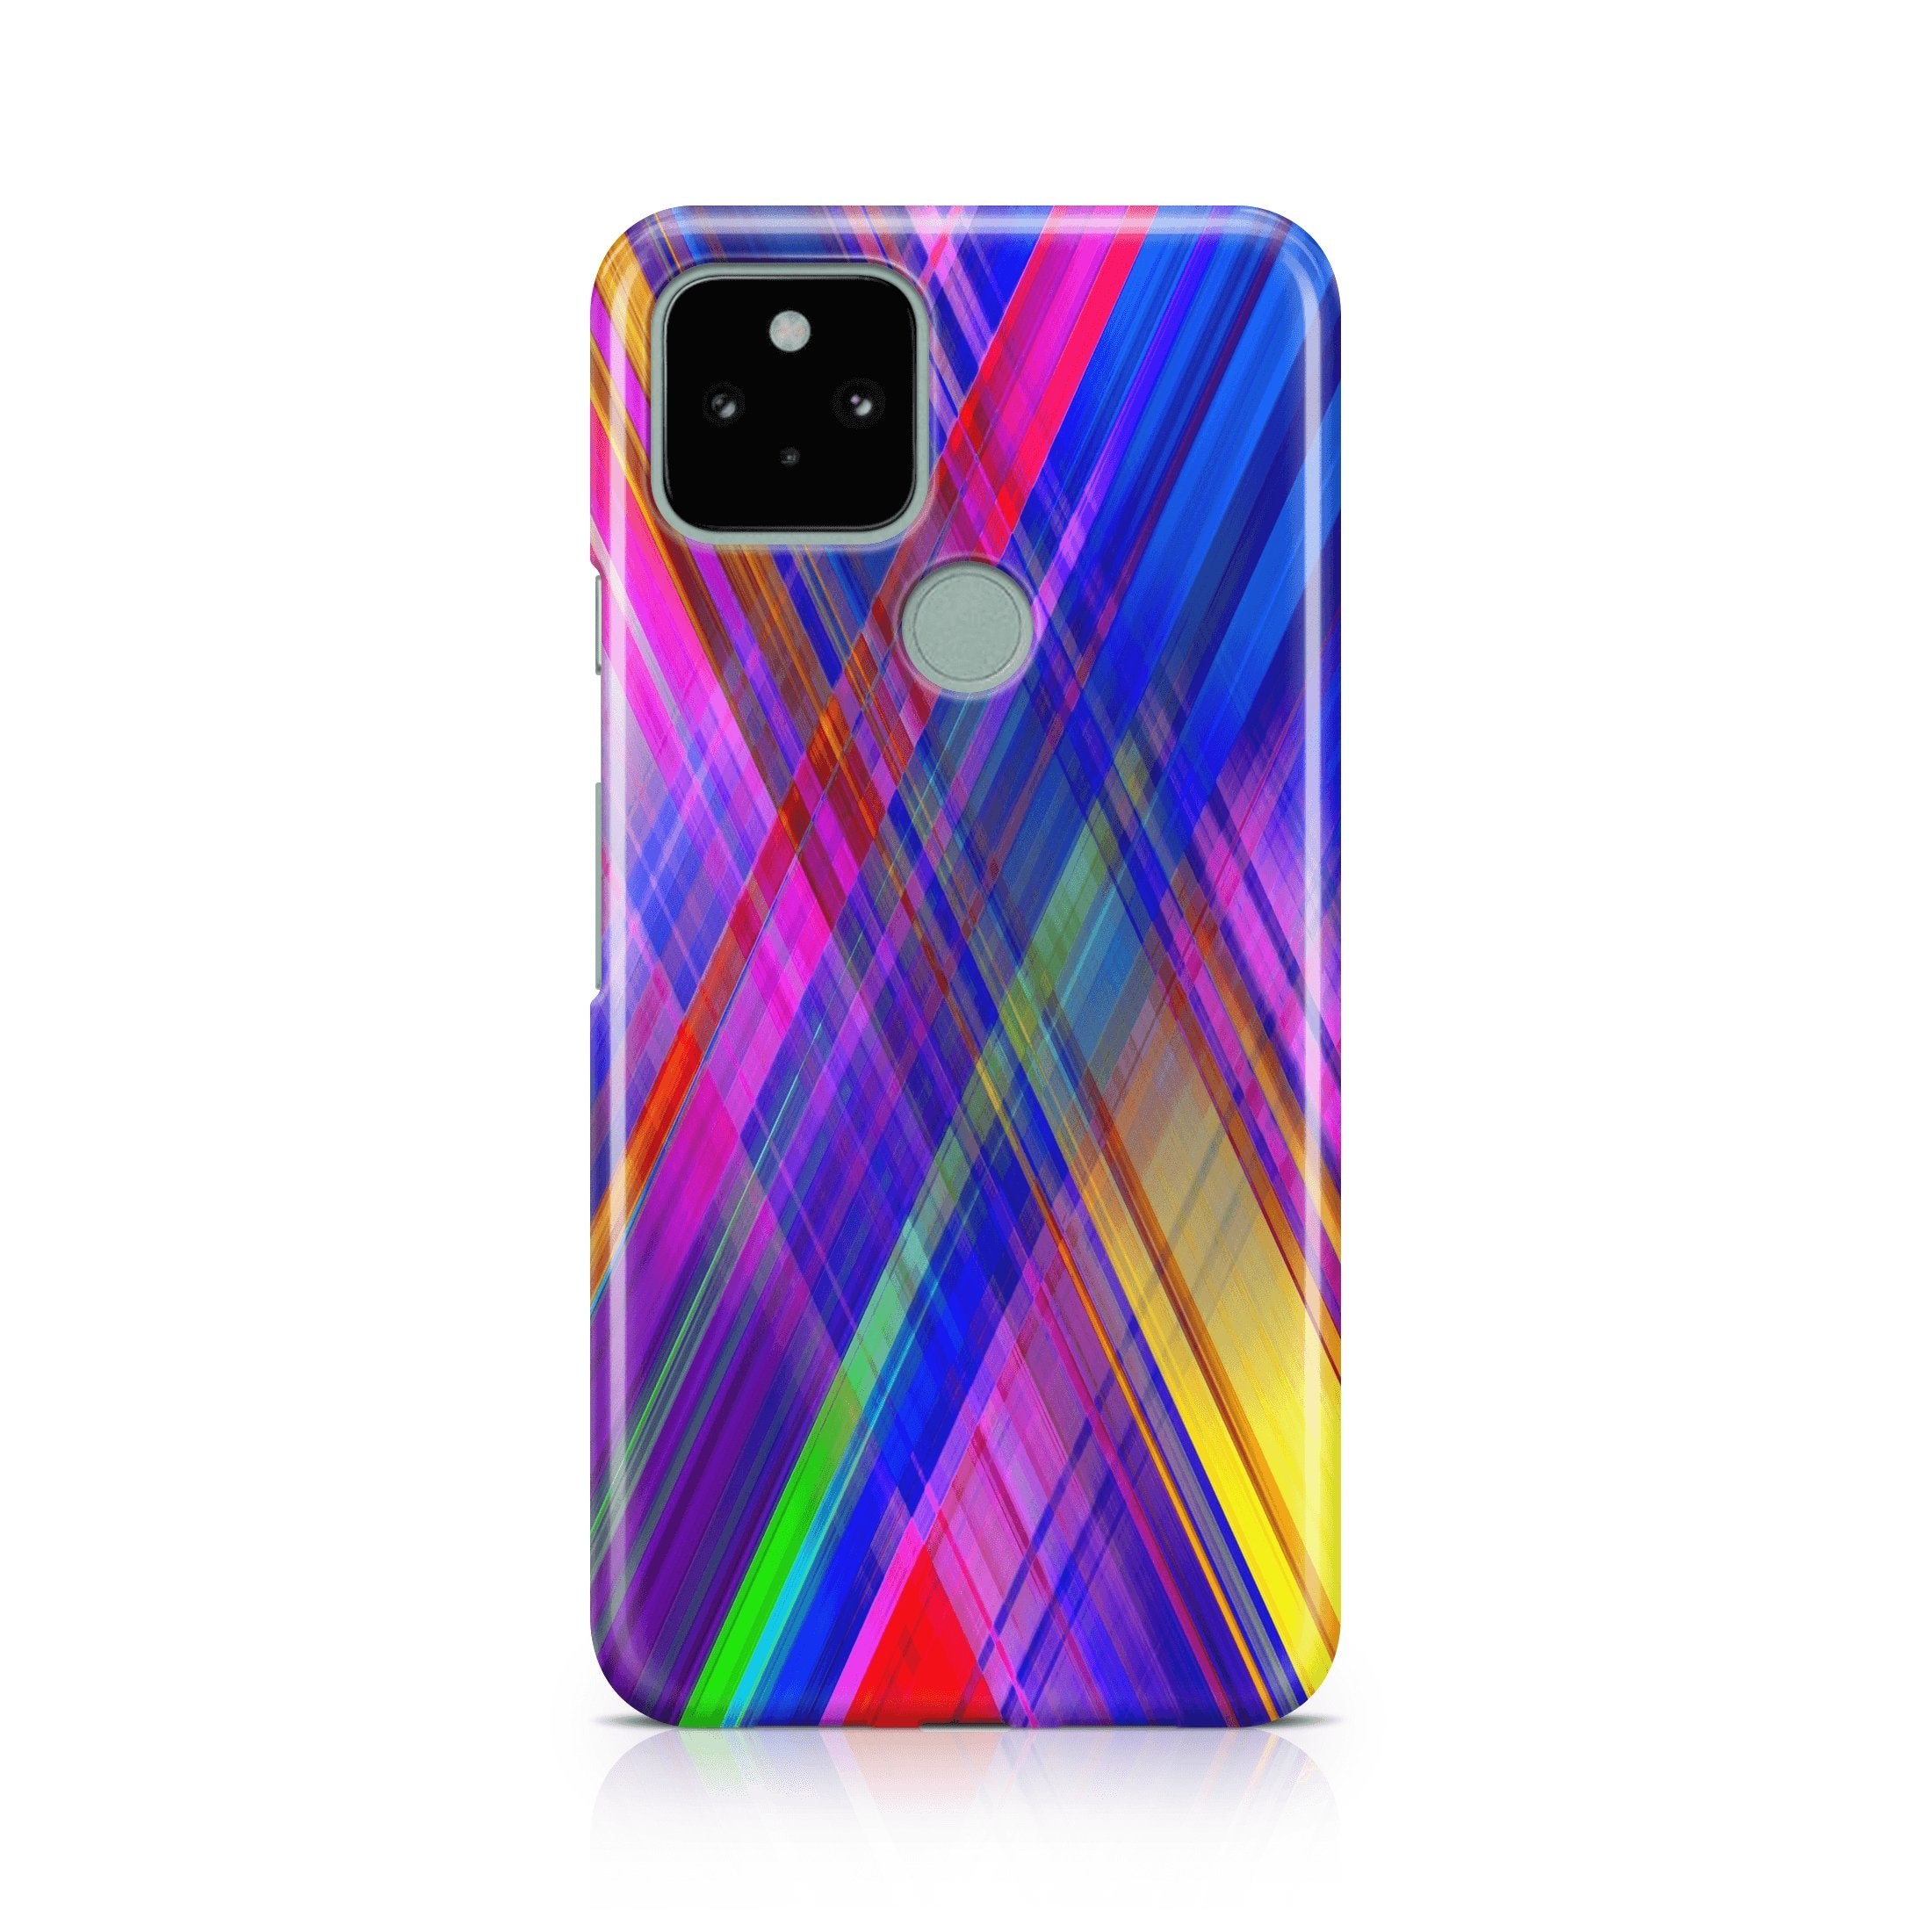 Apex Vertigo - Google phone case designs by CaseSwagger